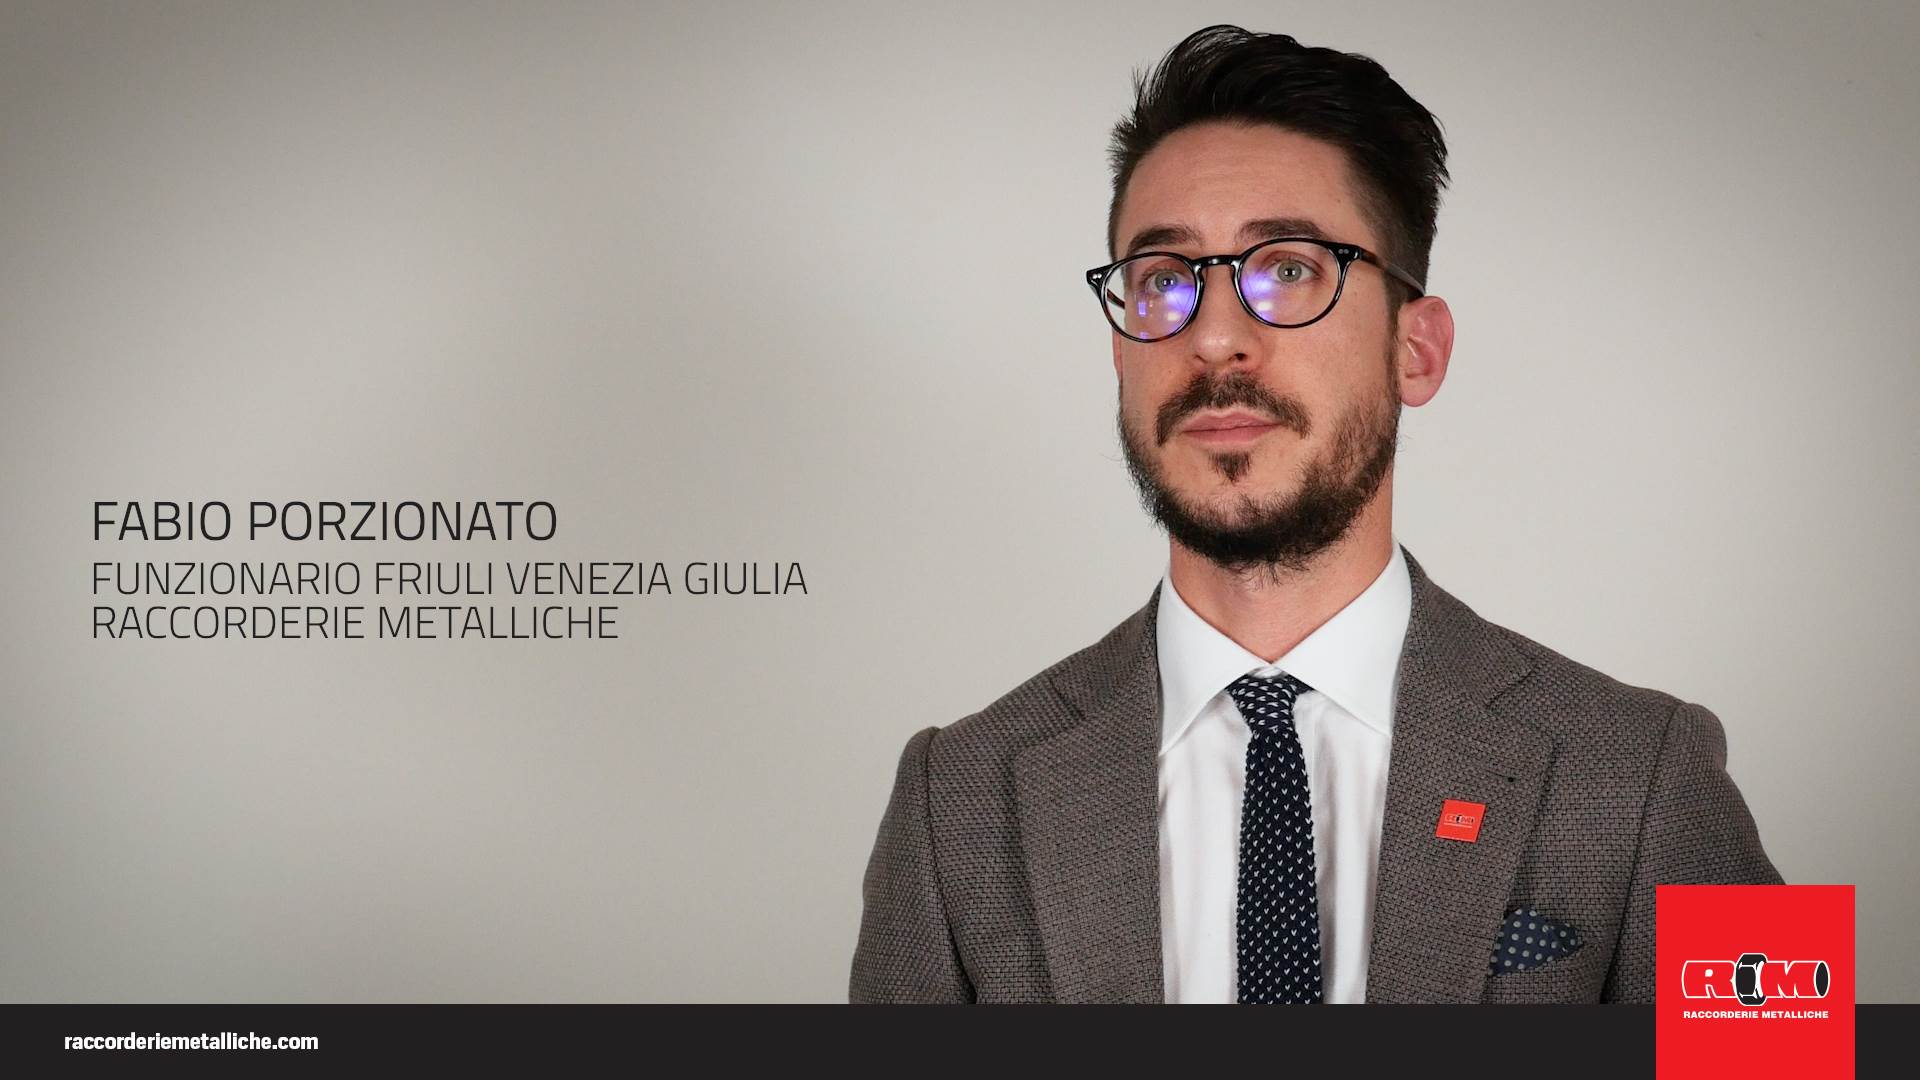 Fabio Porzionato - Funzionario Friuli Venezia Giulia